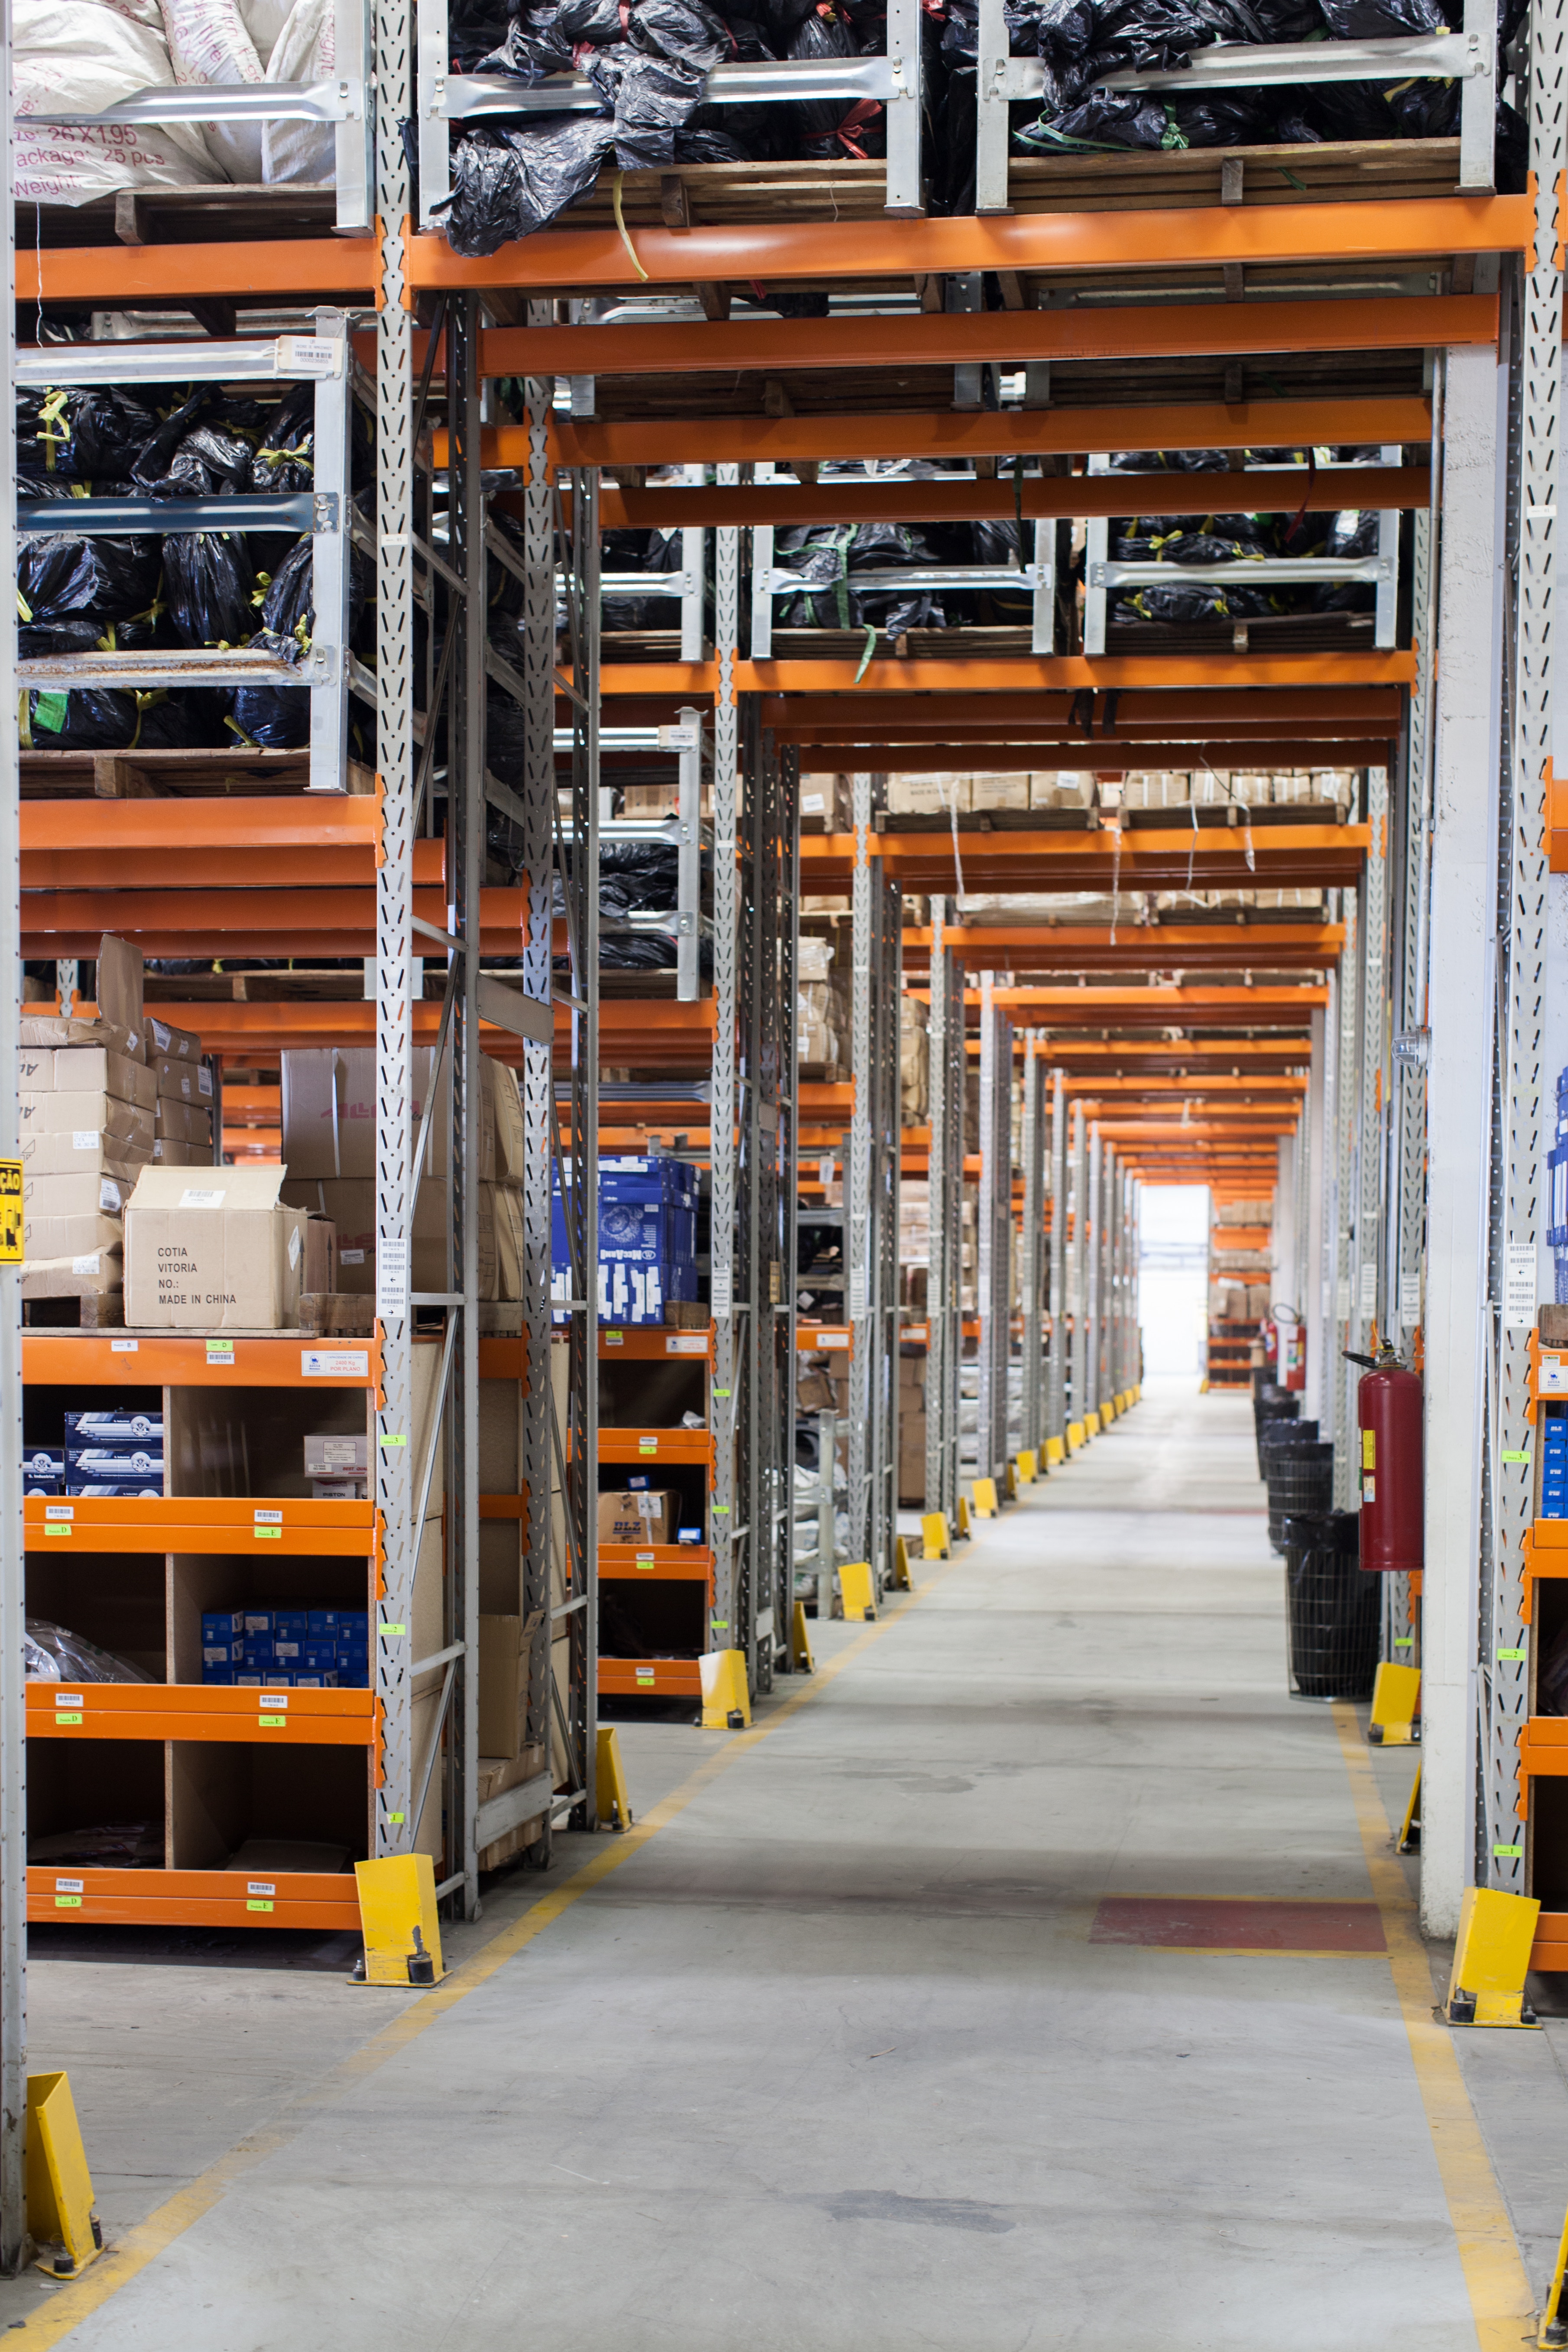 Pallet racking shelves in warehouse